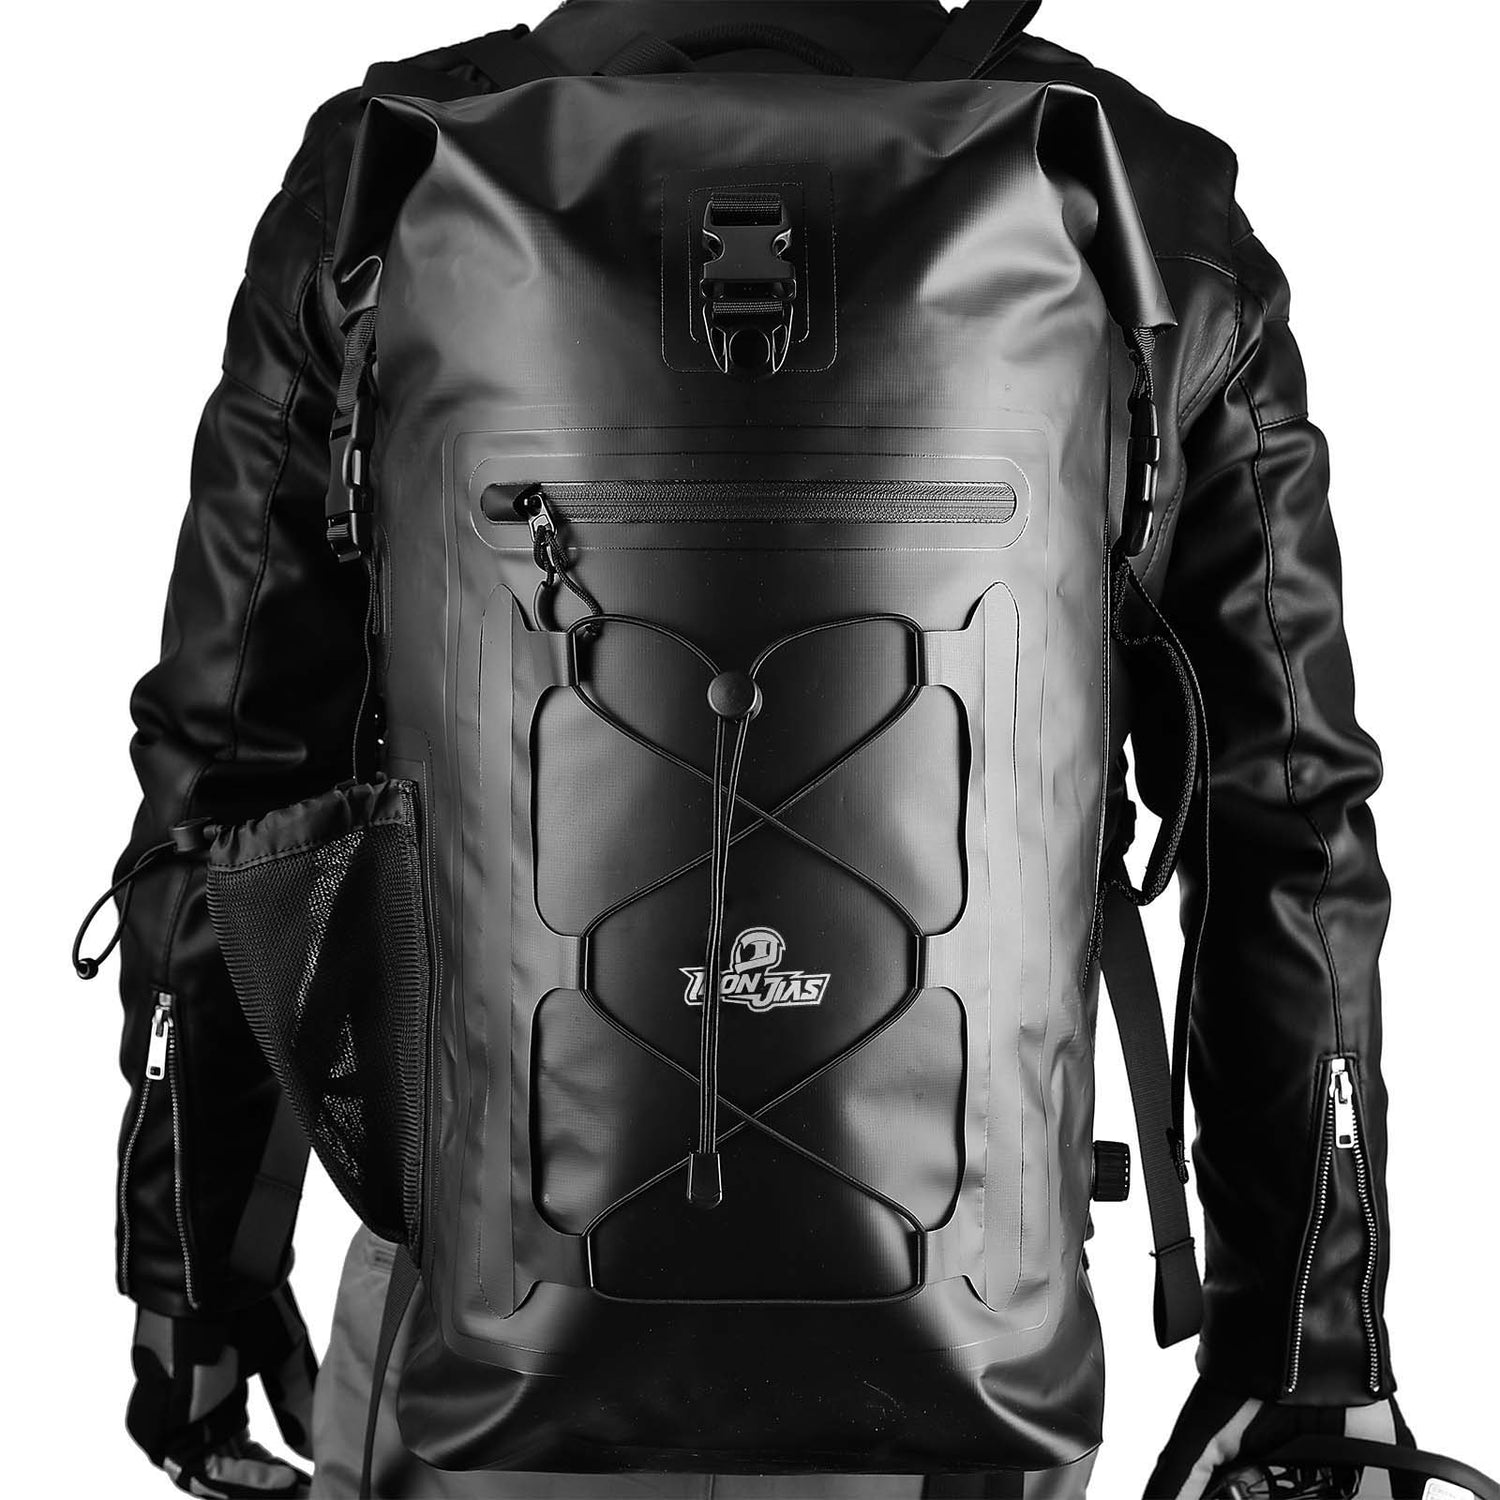 Waterproof High Capacity Motorcycle Backpack